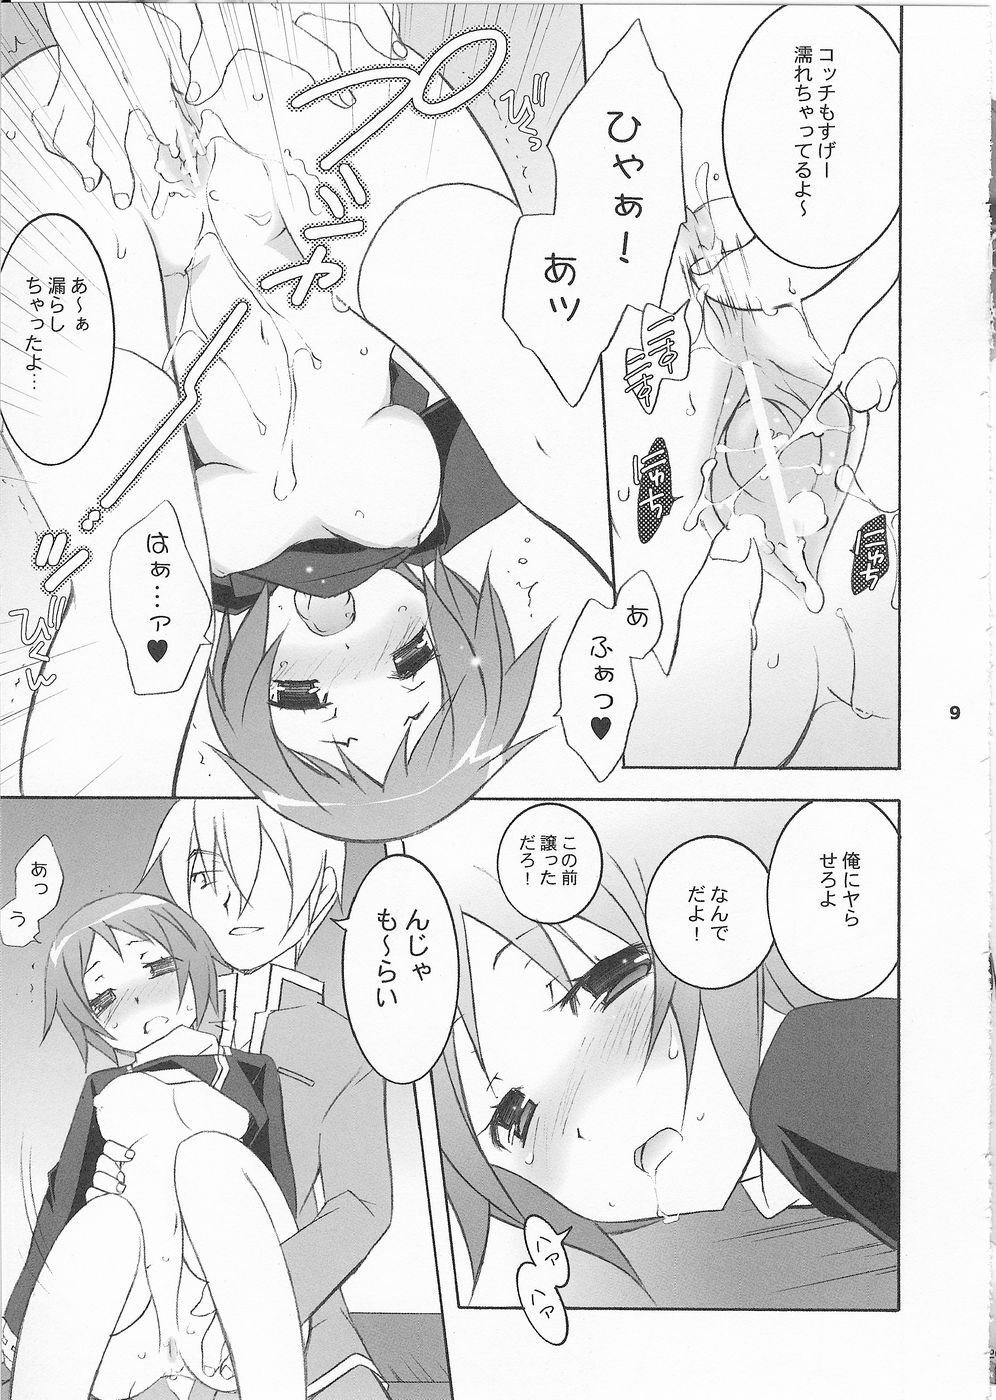 (SC33) [Tenjikuya (Mochizuki Nana)] 3P (Persona 3) page 8 full